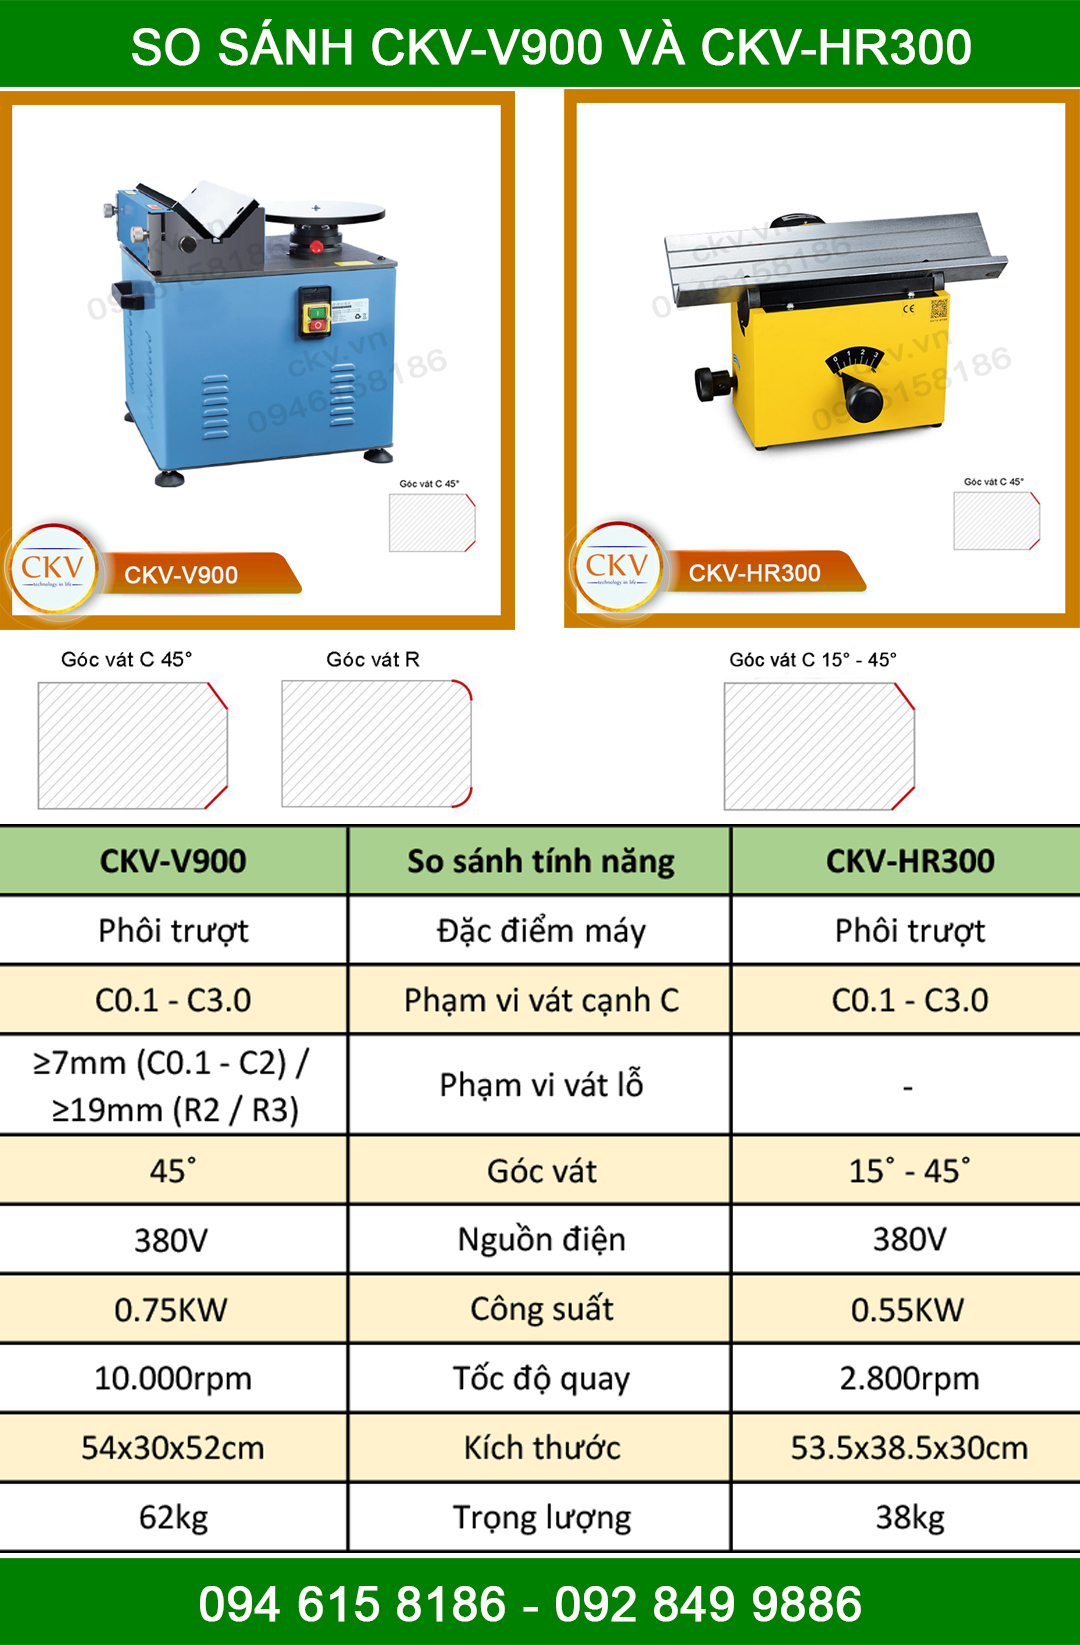 So sánh CKV-V900 với CKV-HR300